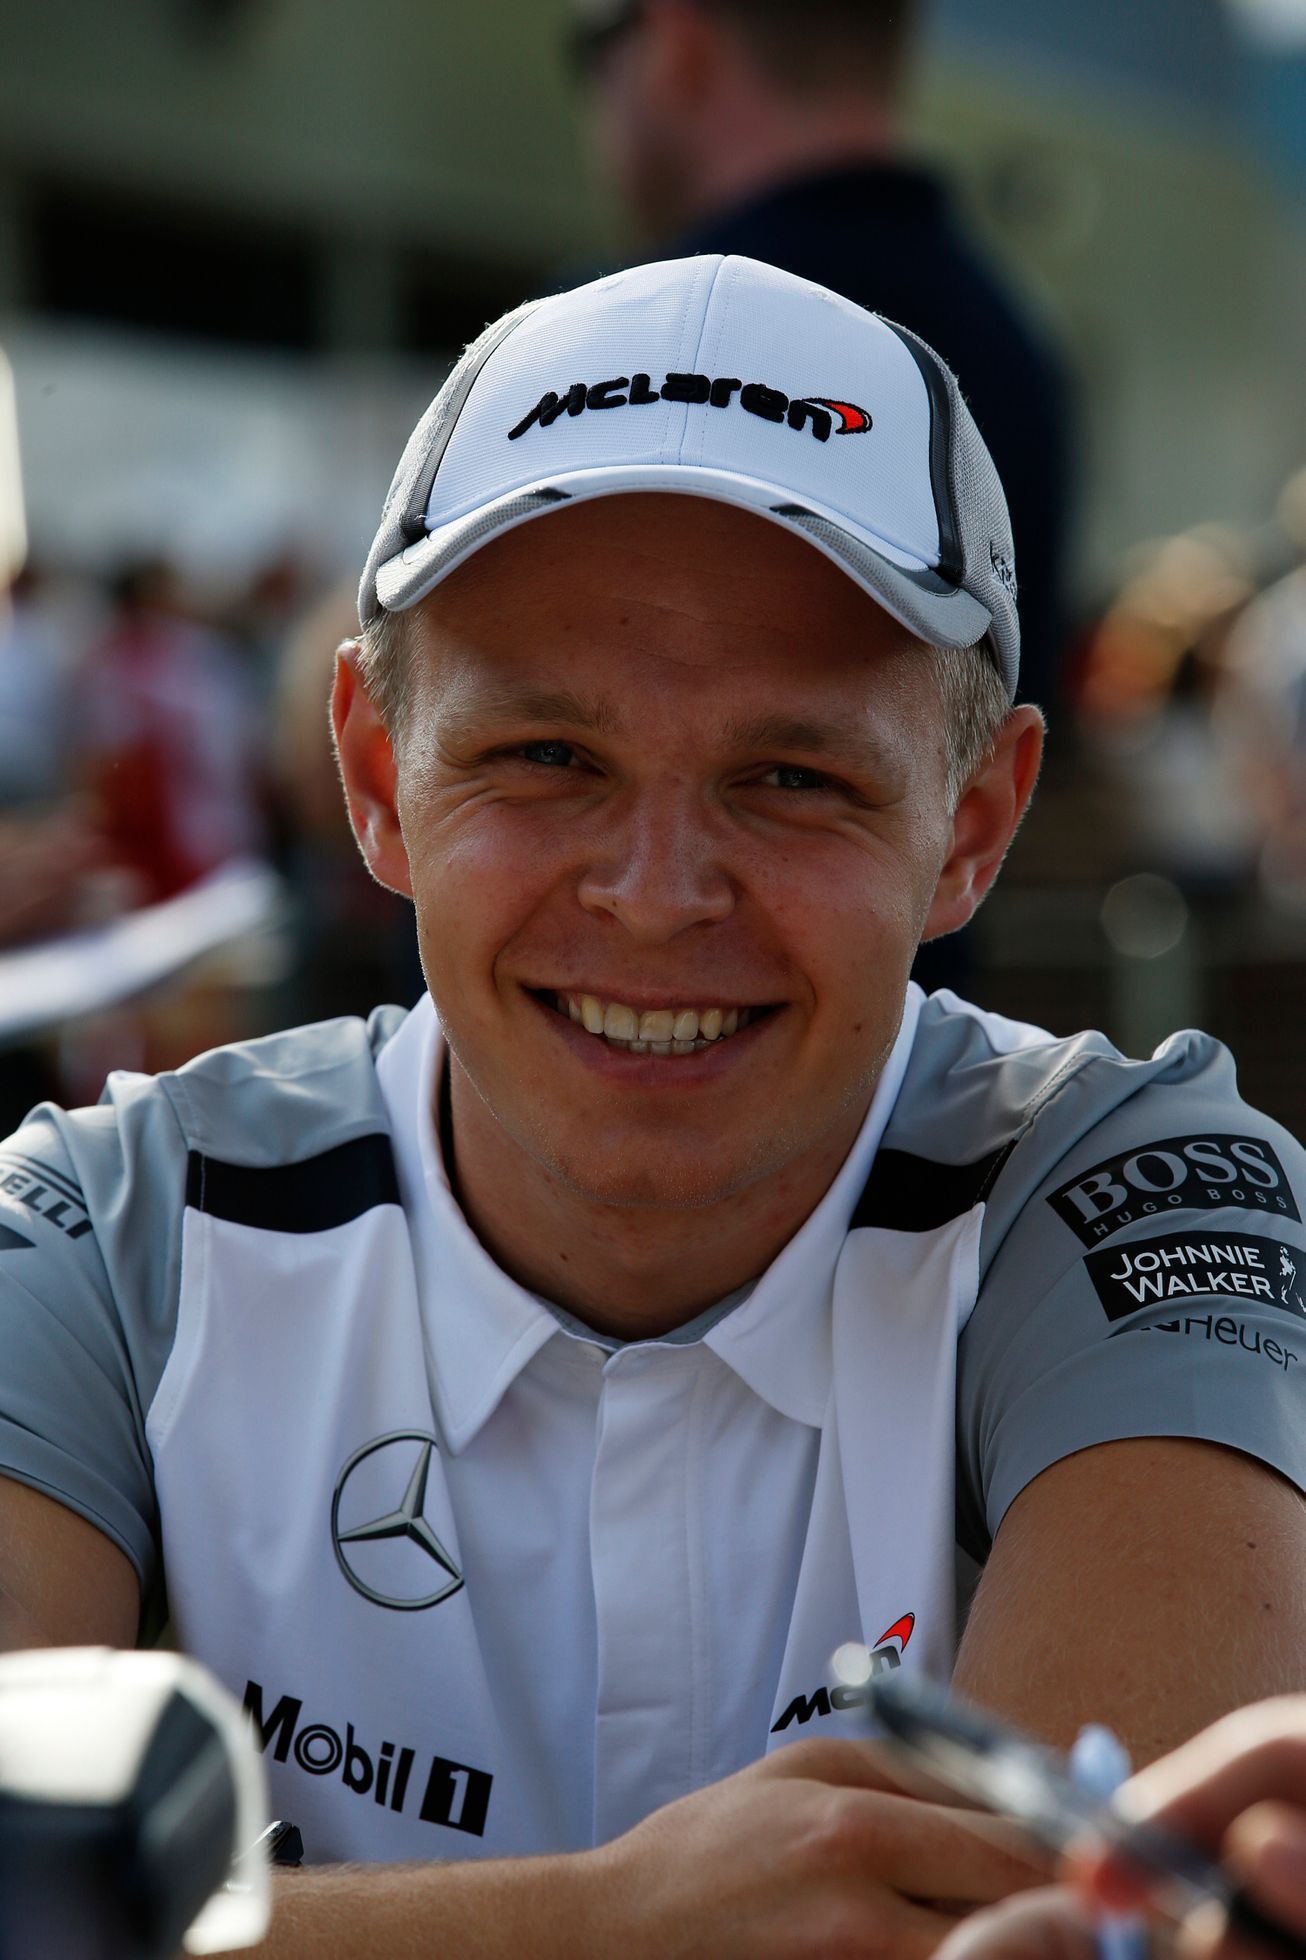 F1, VC Austrálie 2014: Kevin Magnussen, McLaren